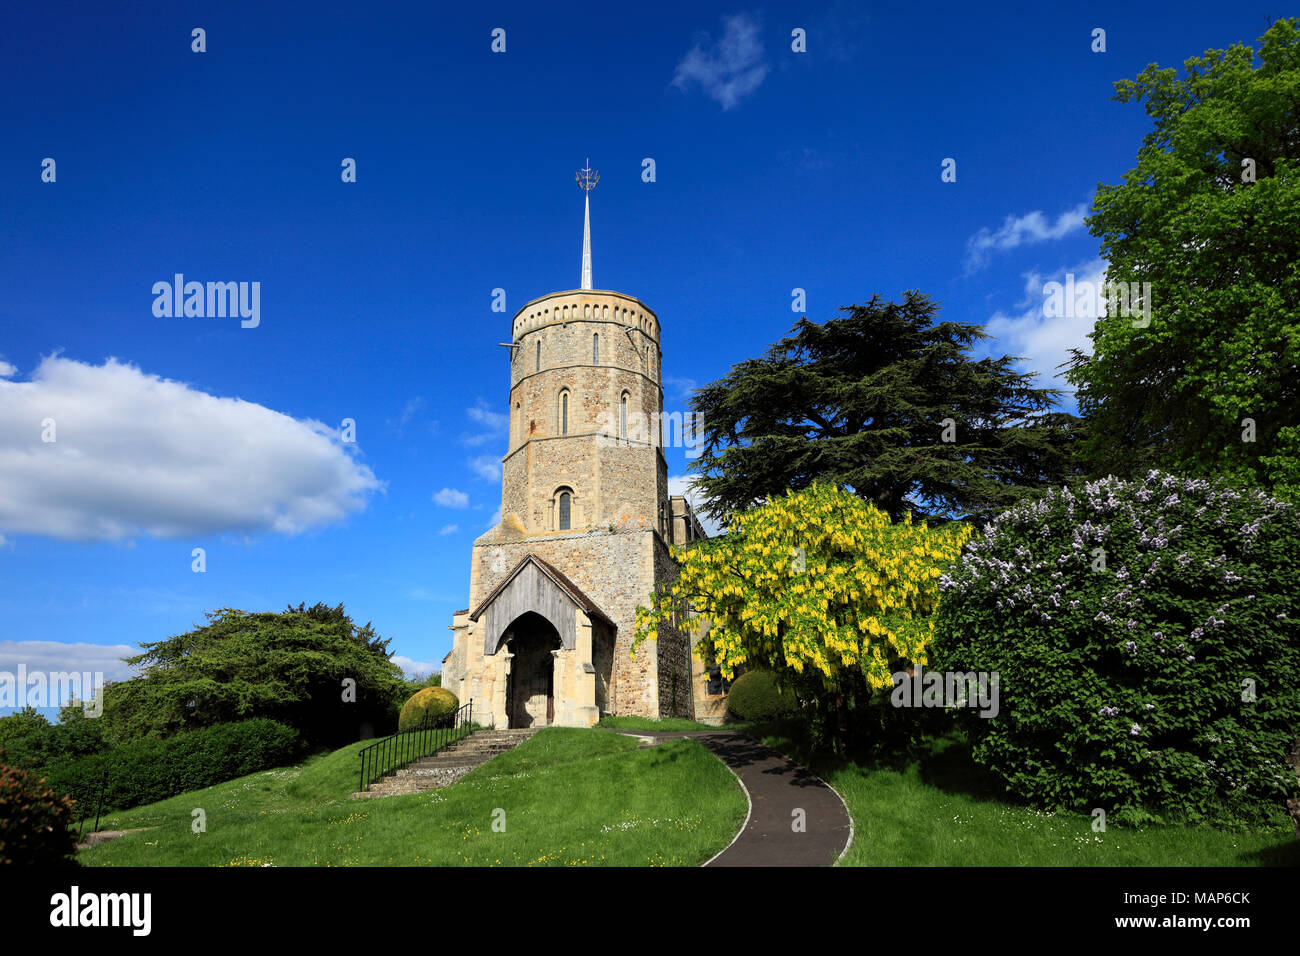 St Marys church, Swaffham Prior village, Cambridgeshire; England, UK Stock Photo